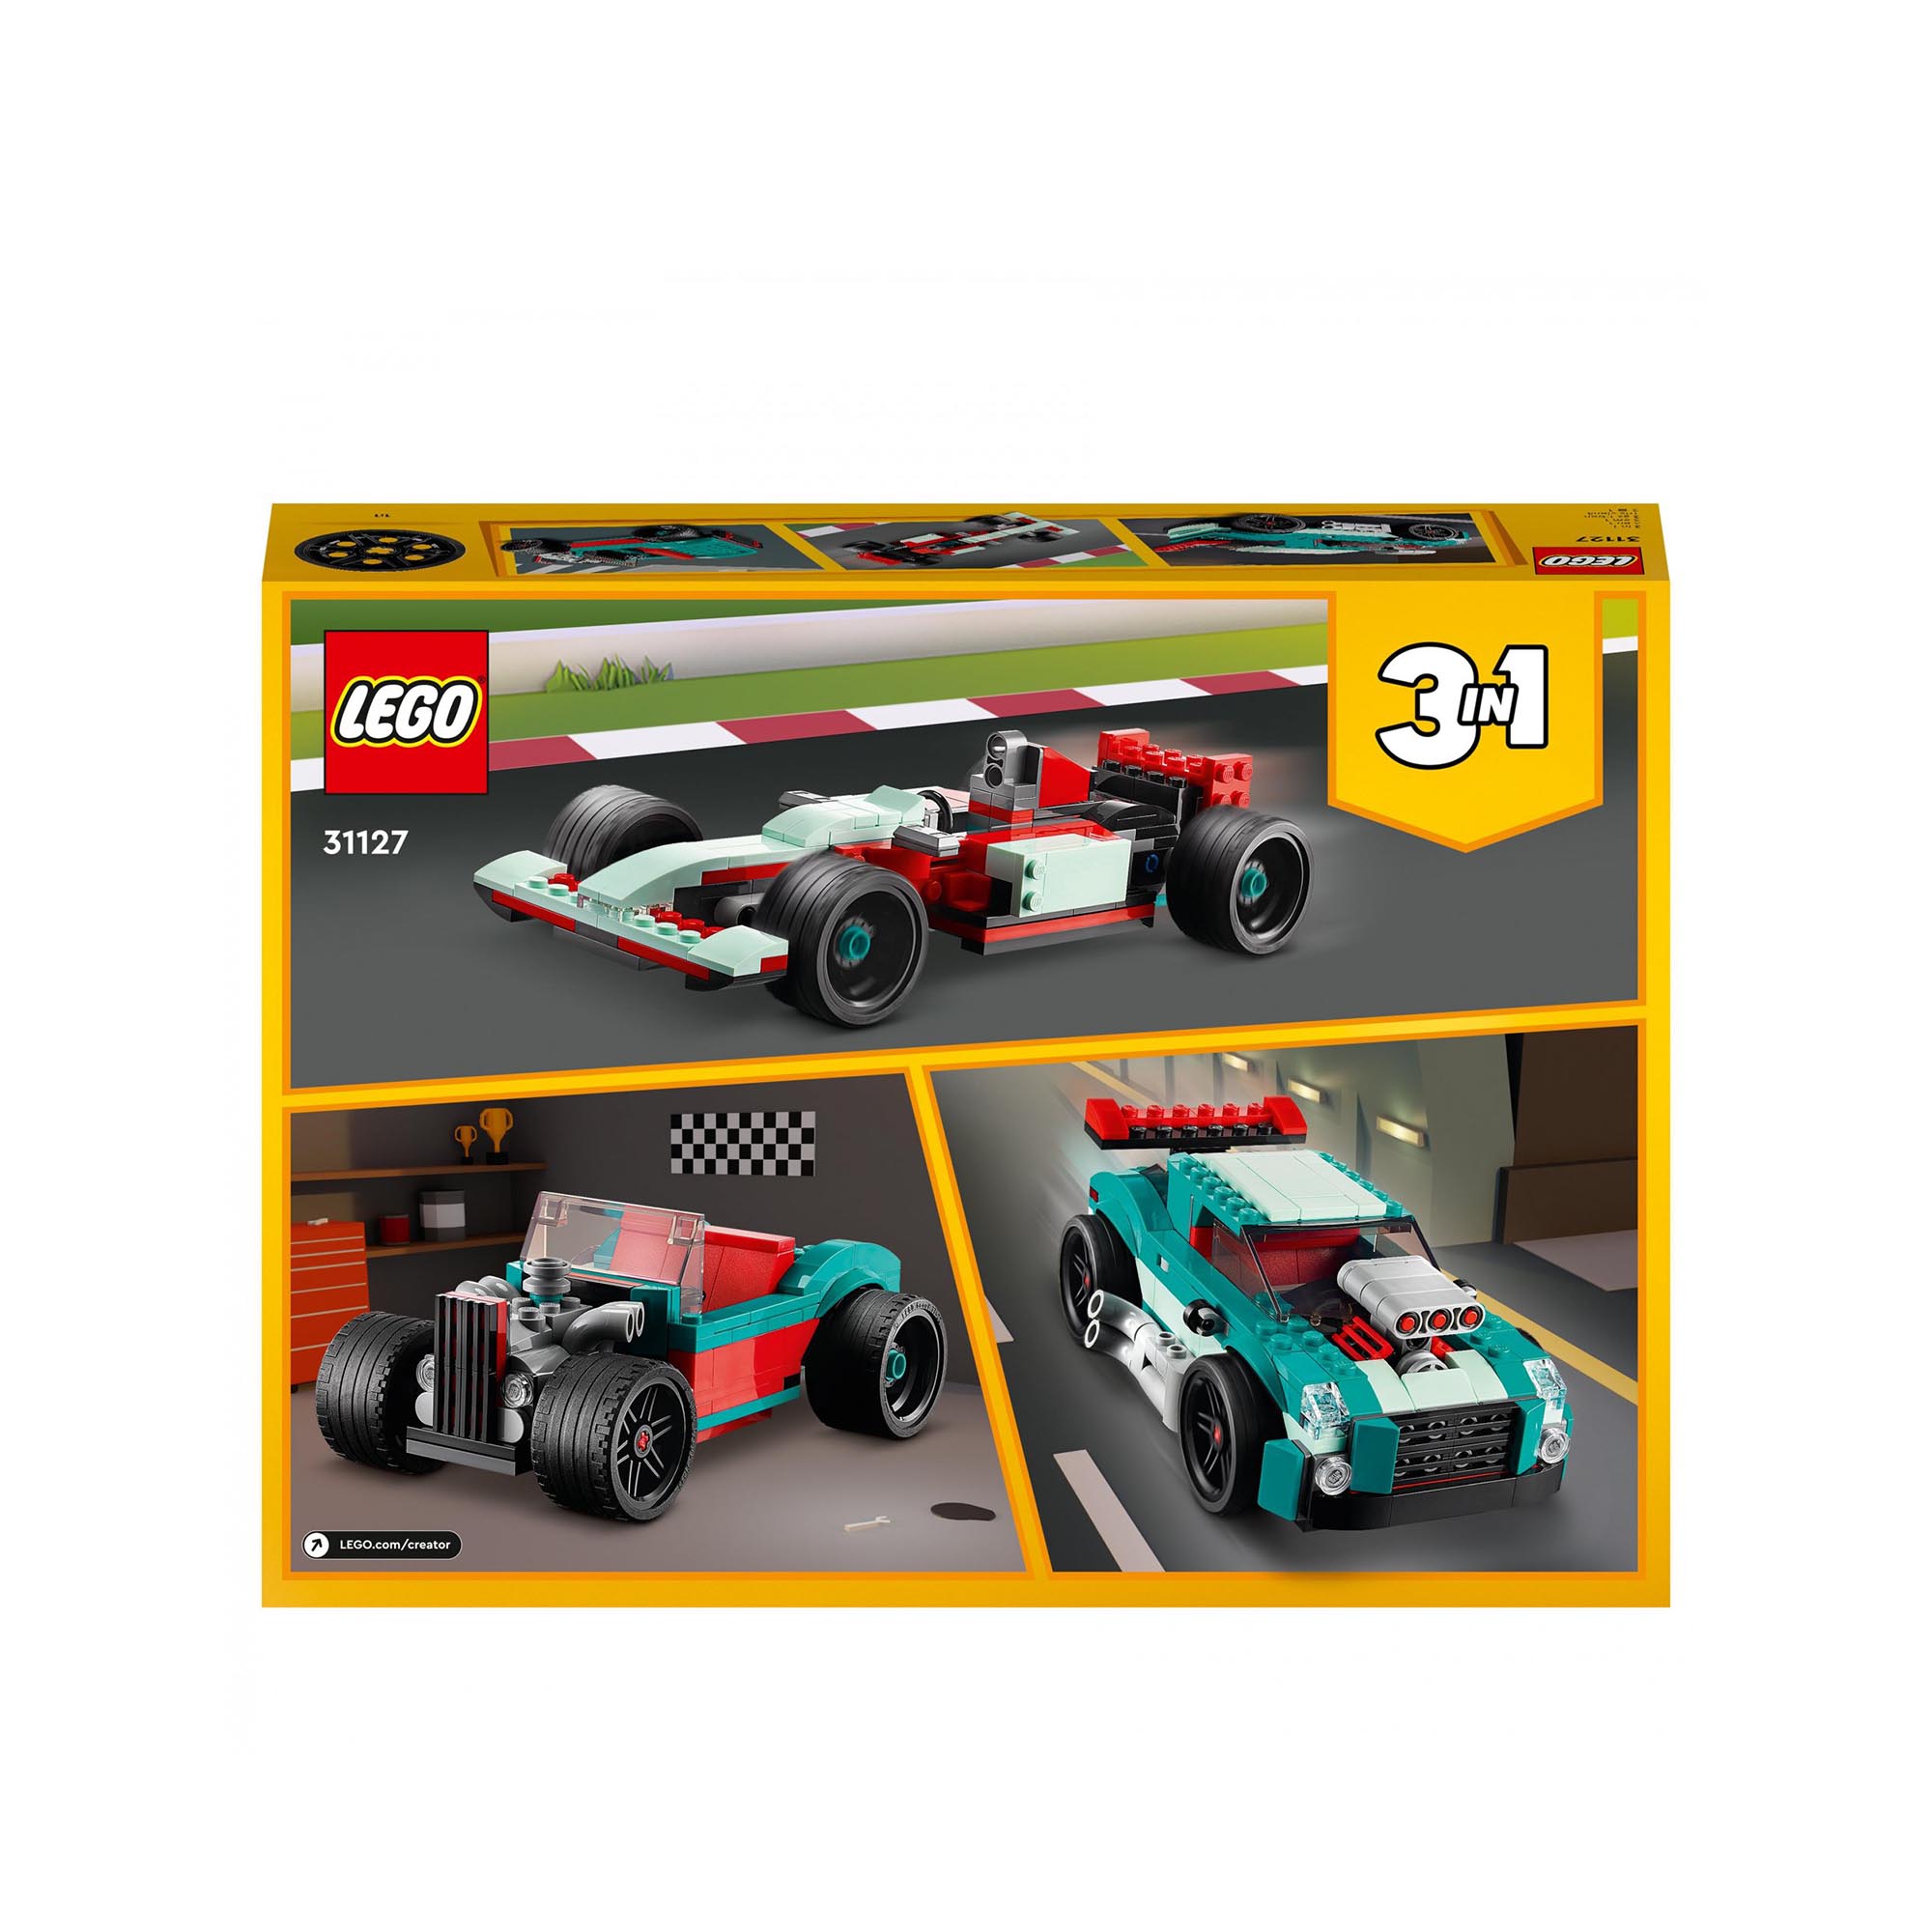 LEGO Creator 3in1 Street Racer, Macchine Giocattolo, Auto da Corsa, Giochi per B 31127, , large